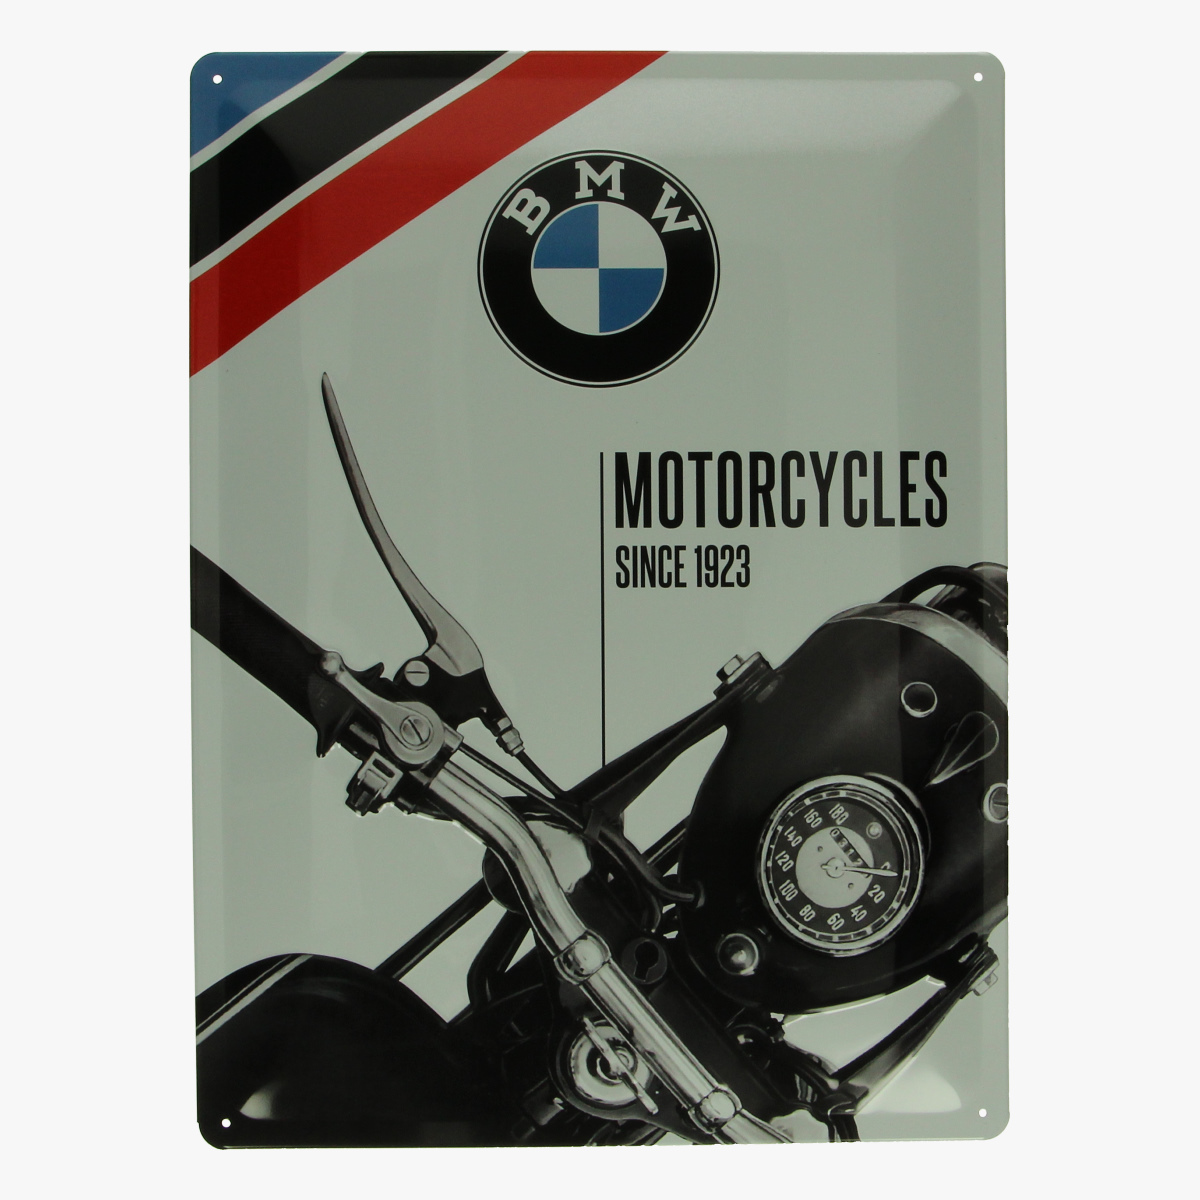 Afbeeldingen van blikken bord BMW motorcycles repro